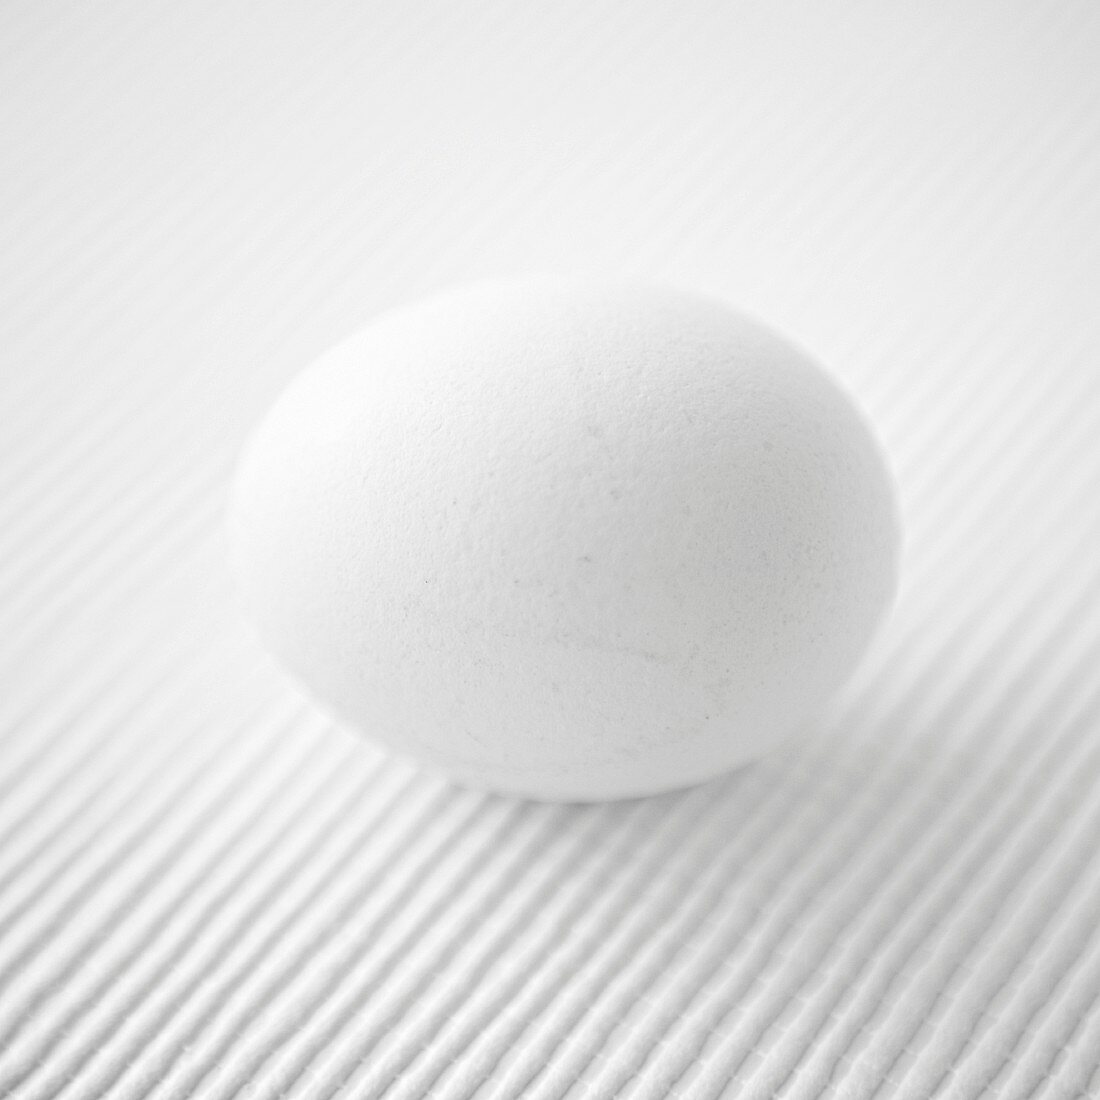 Ein weißes Ei auf weißem Untergrund